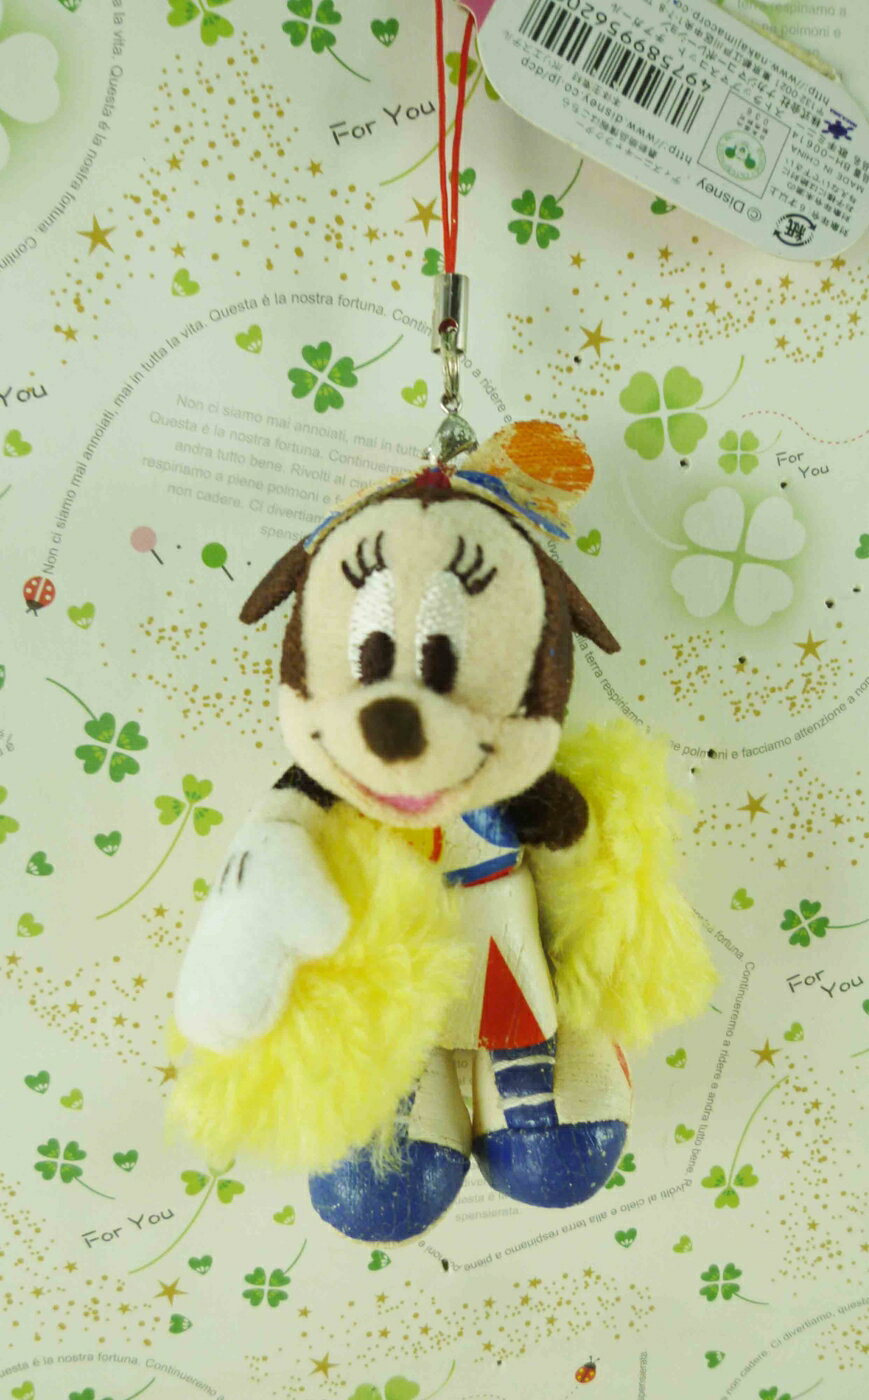 【震撼精品百貨】Micky Mouse 米奇/米妮 吊飾-啦啦隊娃娃 震撼日式精品百貨